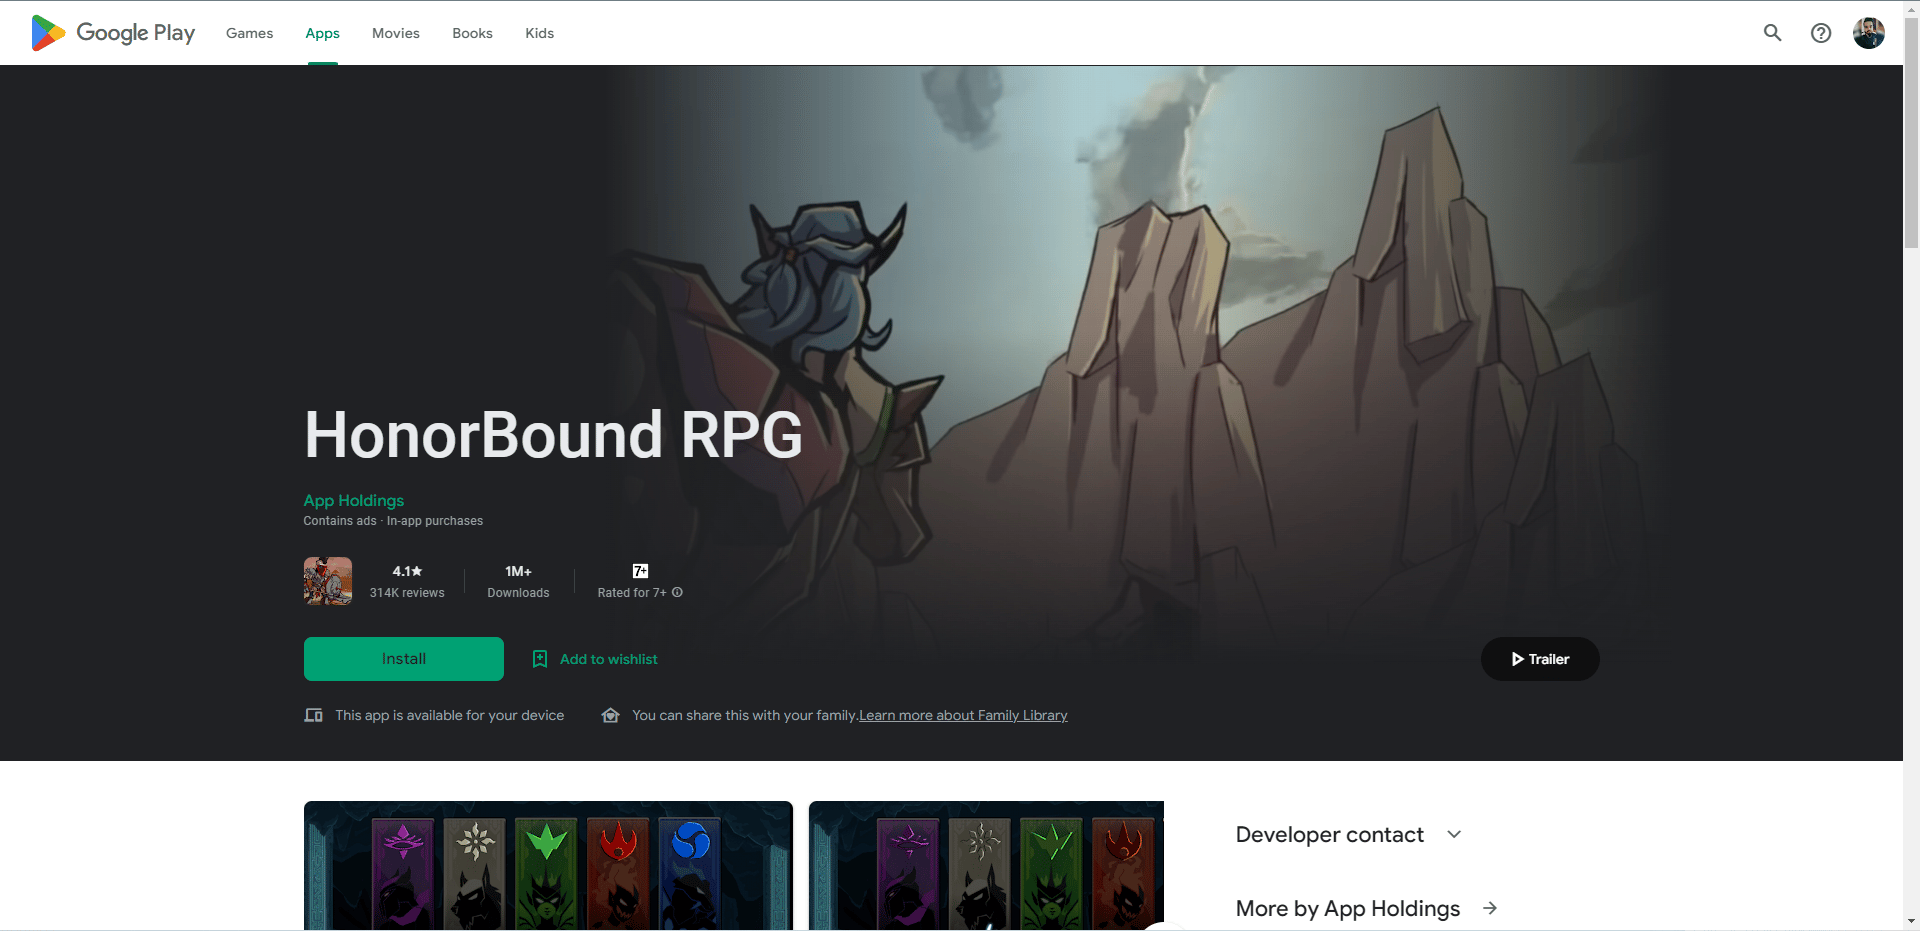 HonorBound RPG play store webpage